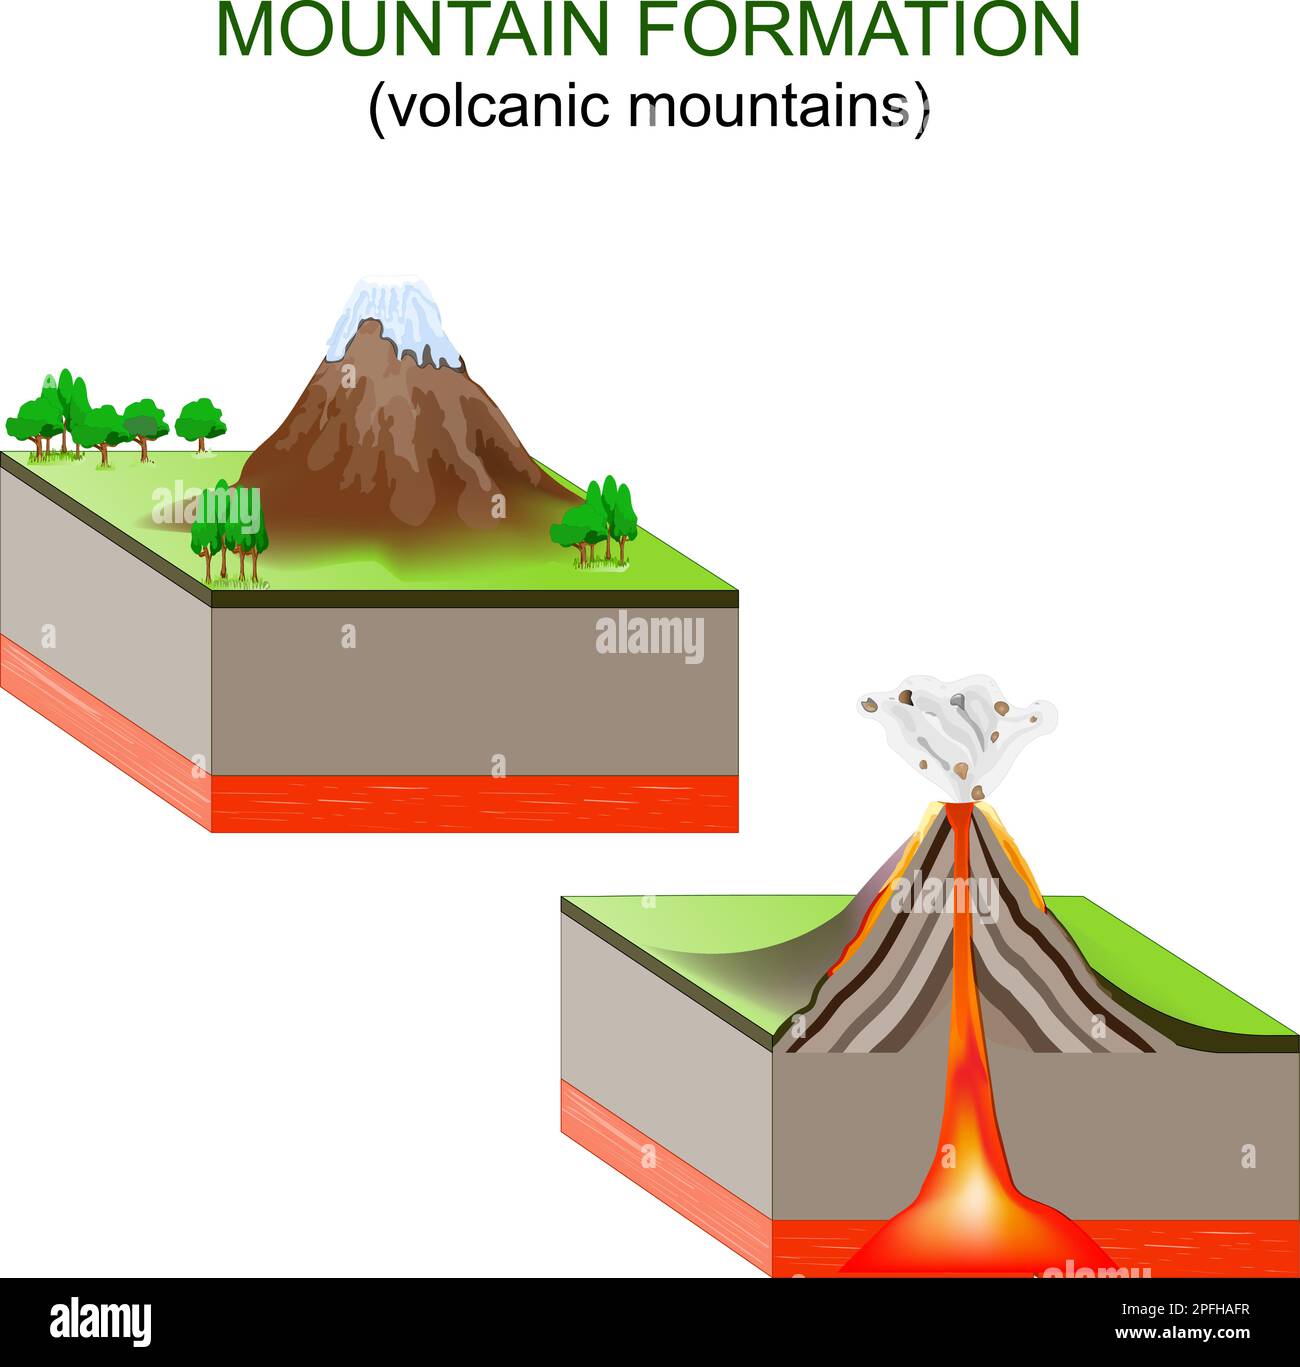 formation de montagne. Montagnes volcaniques. Les mouvements des plaques tectoniques créent des volcans le long des limites des plaques, qui éclatent et forment des montagnes. Vect Illustration de Vecteur